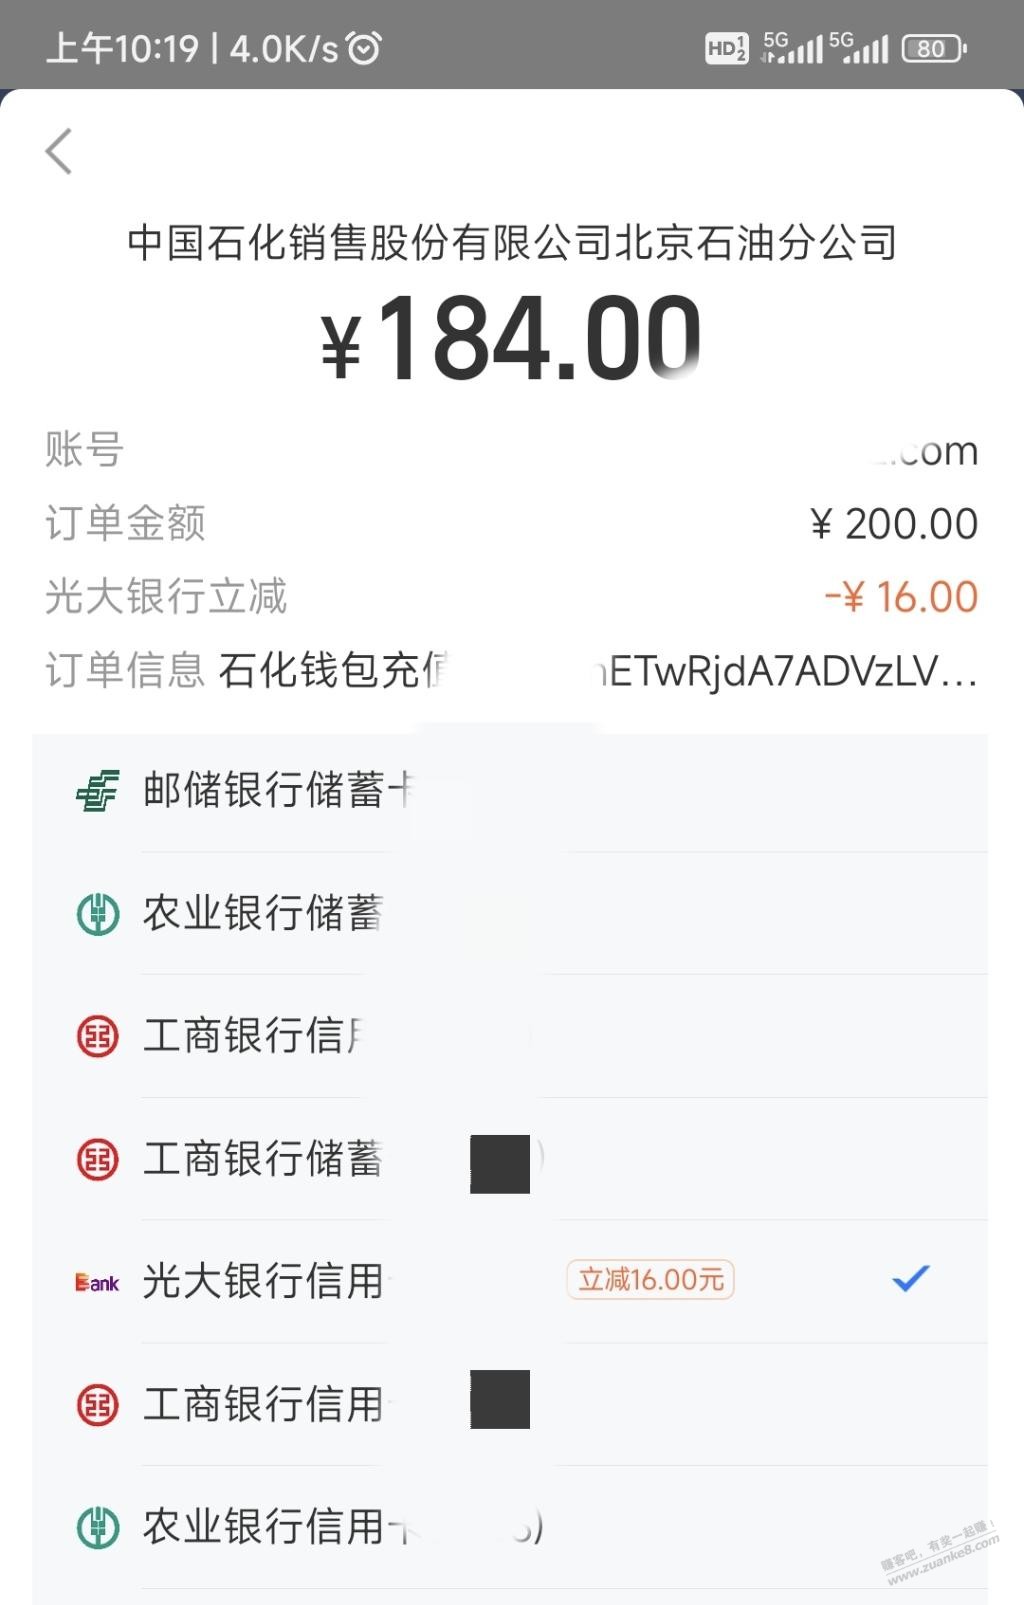 中石化钱包加油 zfb 光大200-16-惠小助(52huixz.com)